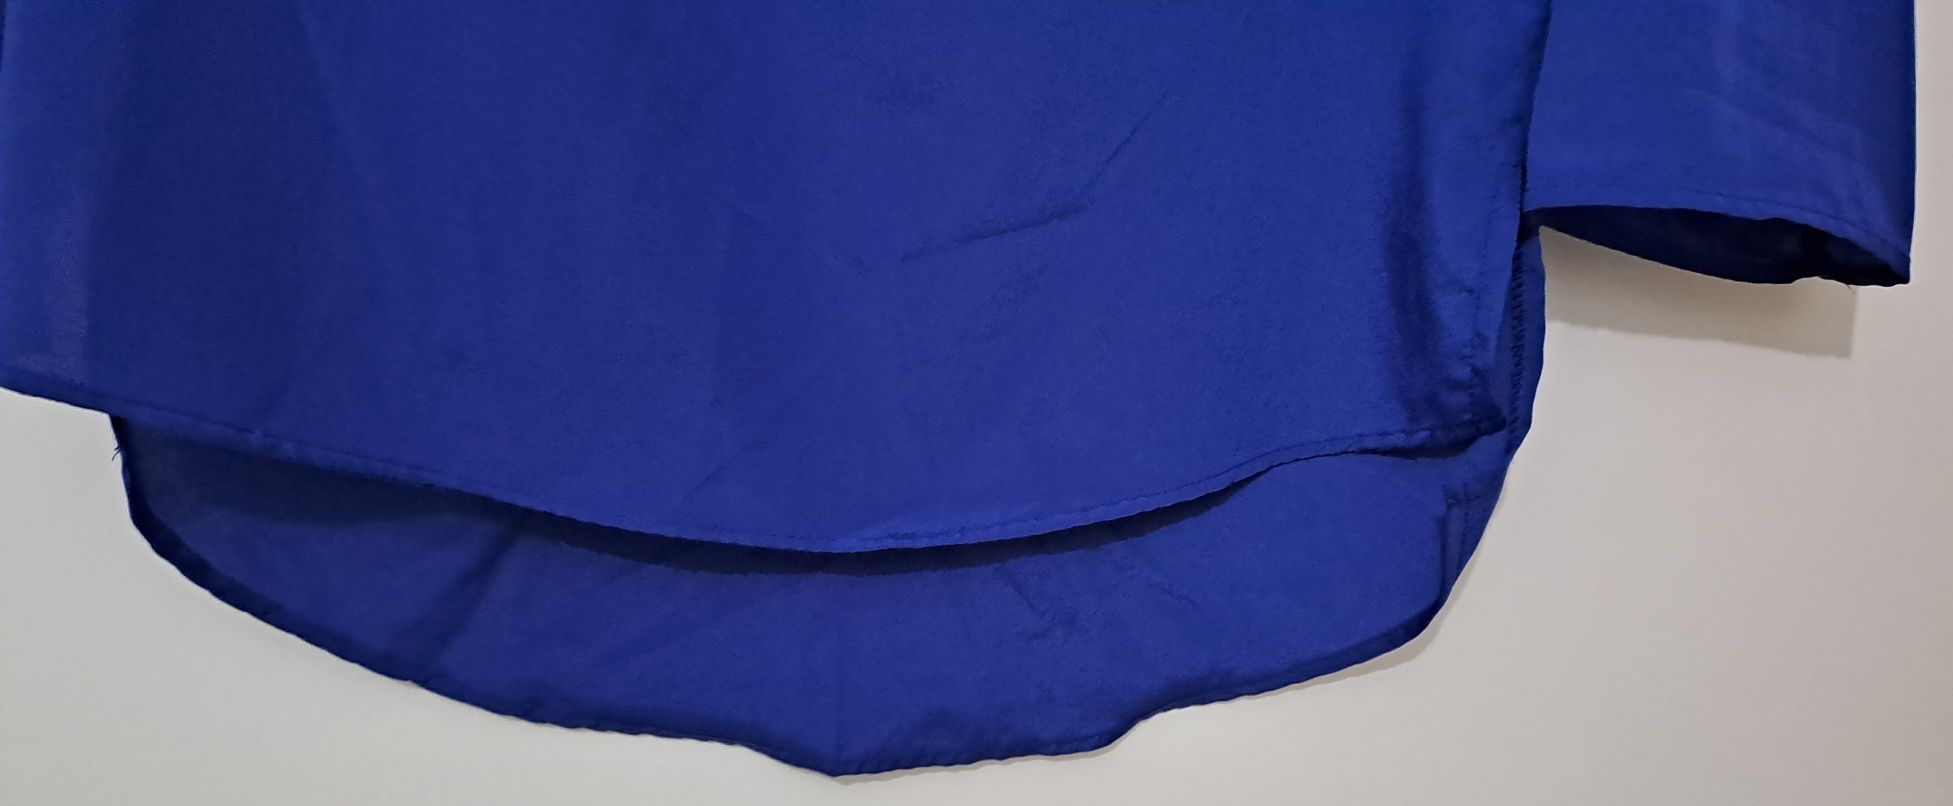 Blusa azul da marca Atmosphere : Tam 40